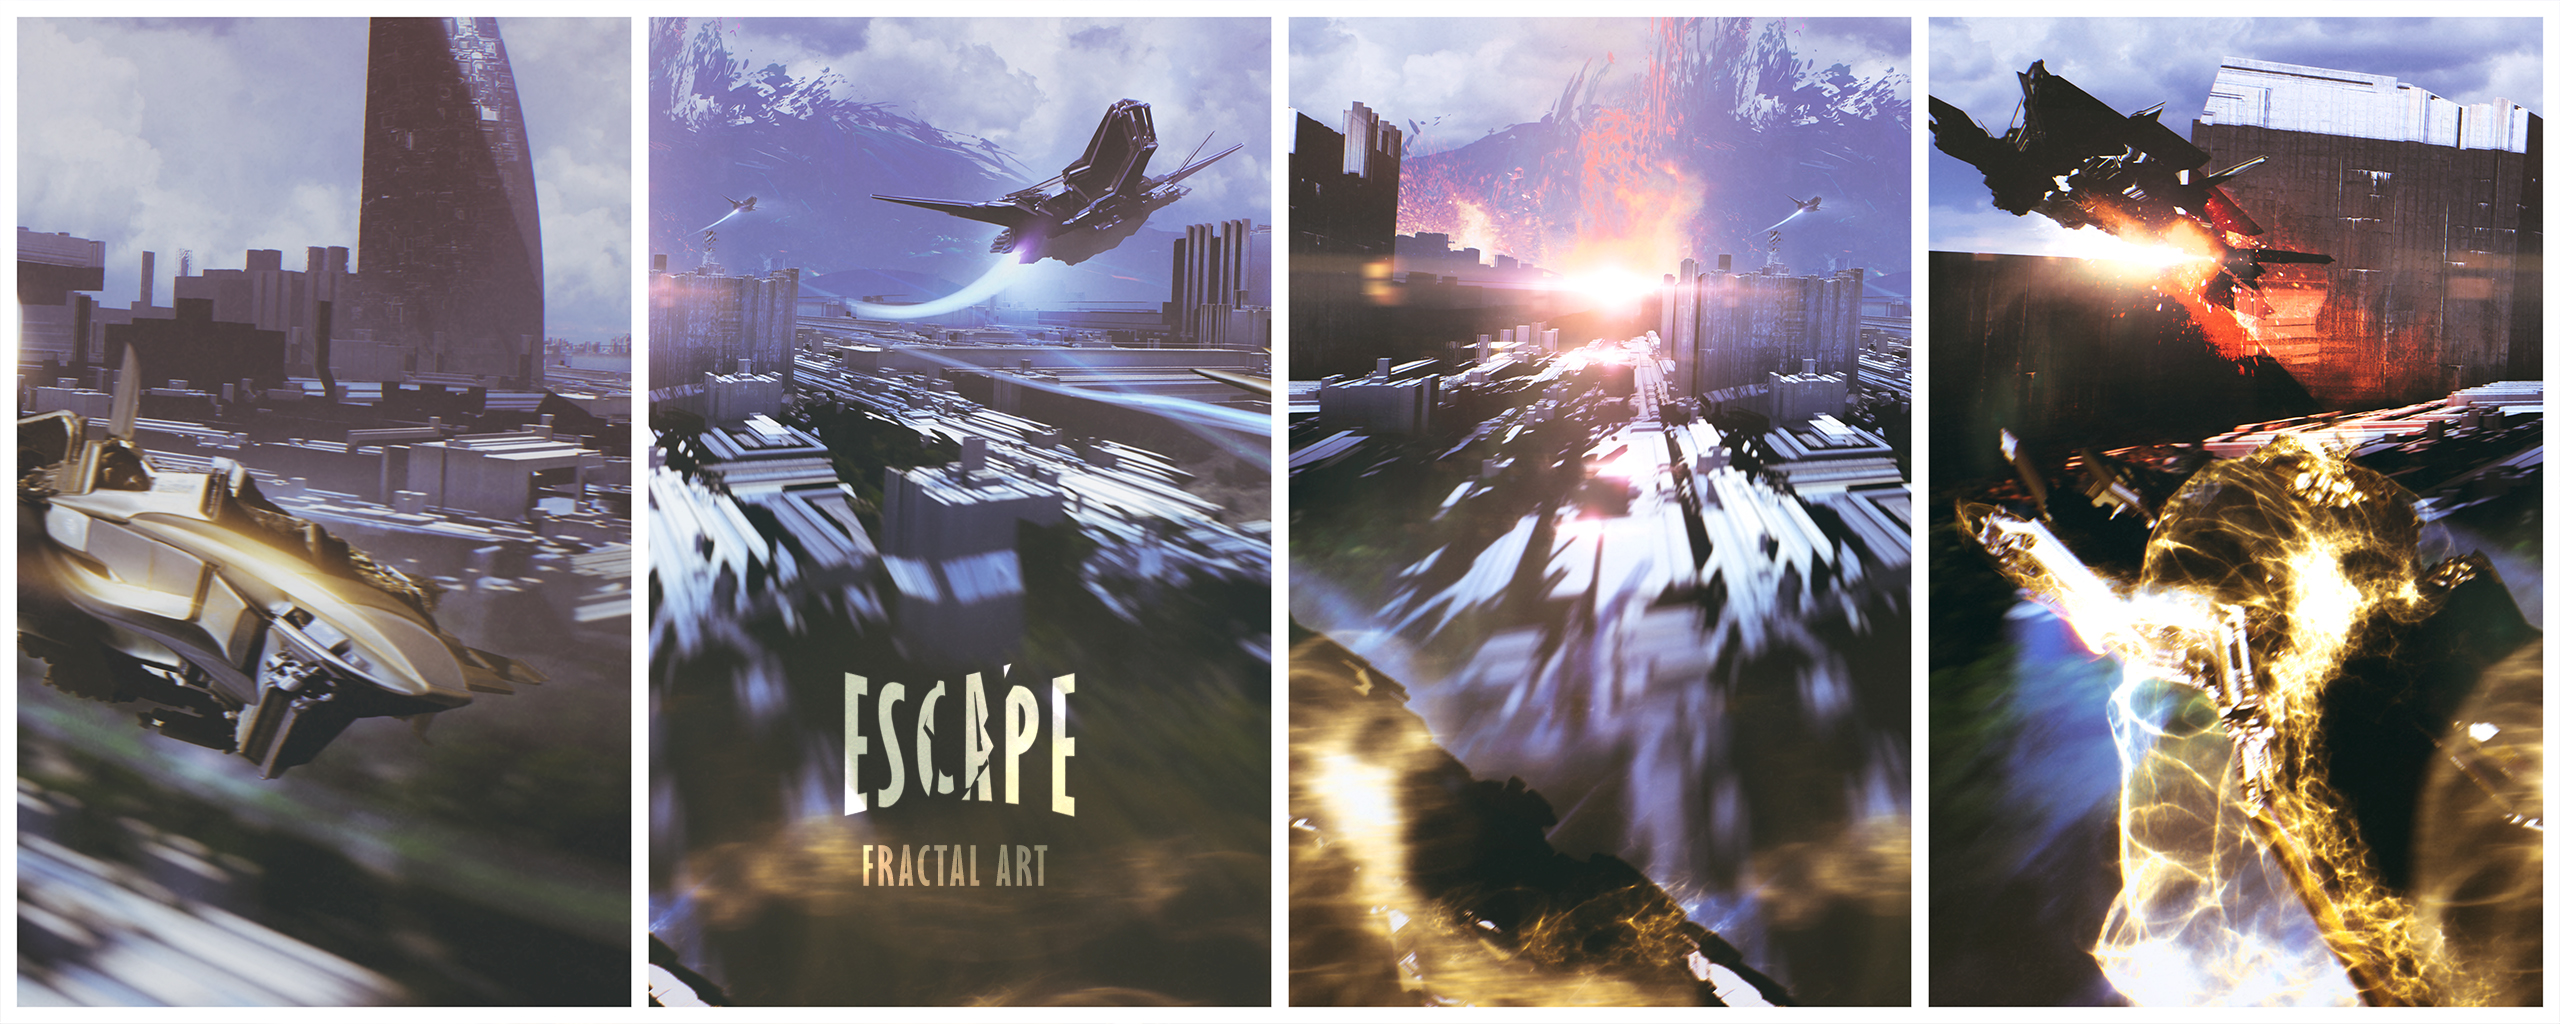 Escape 2560 